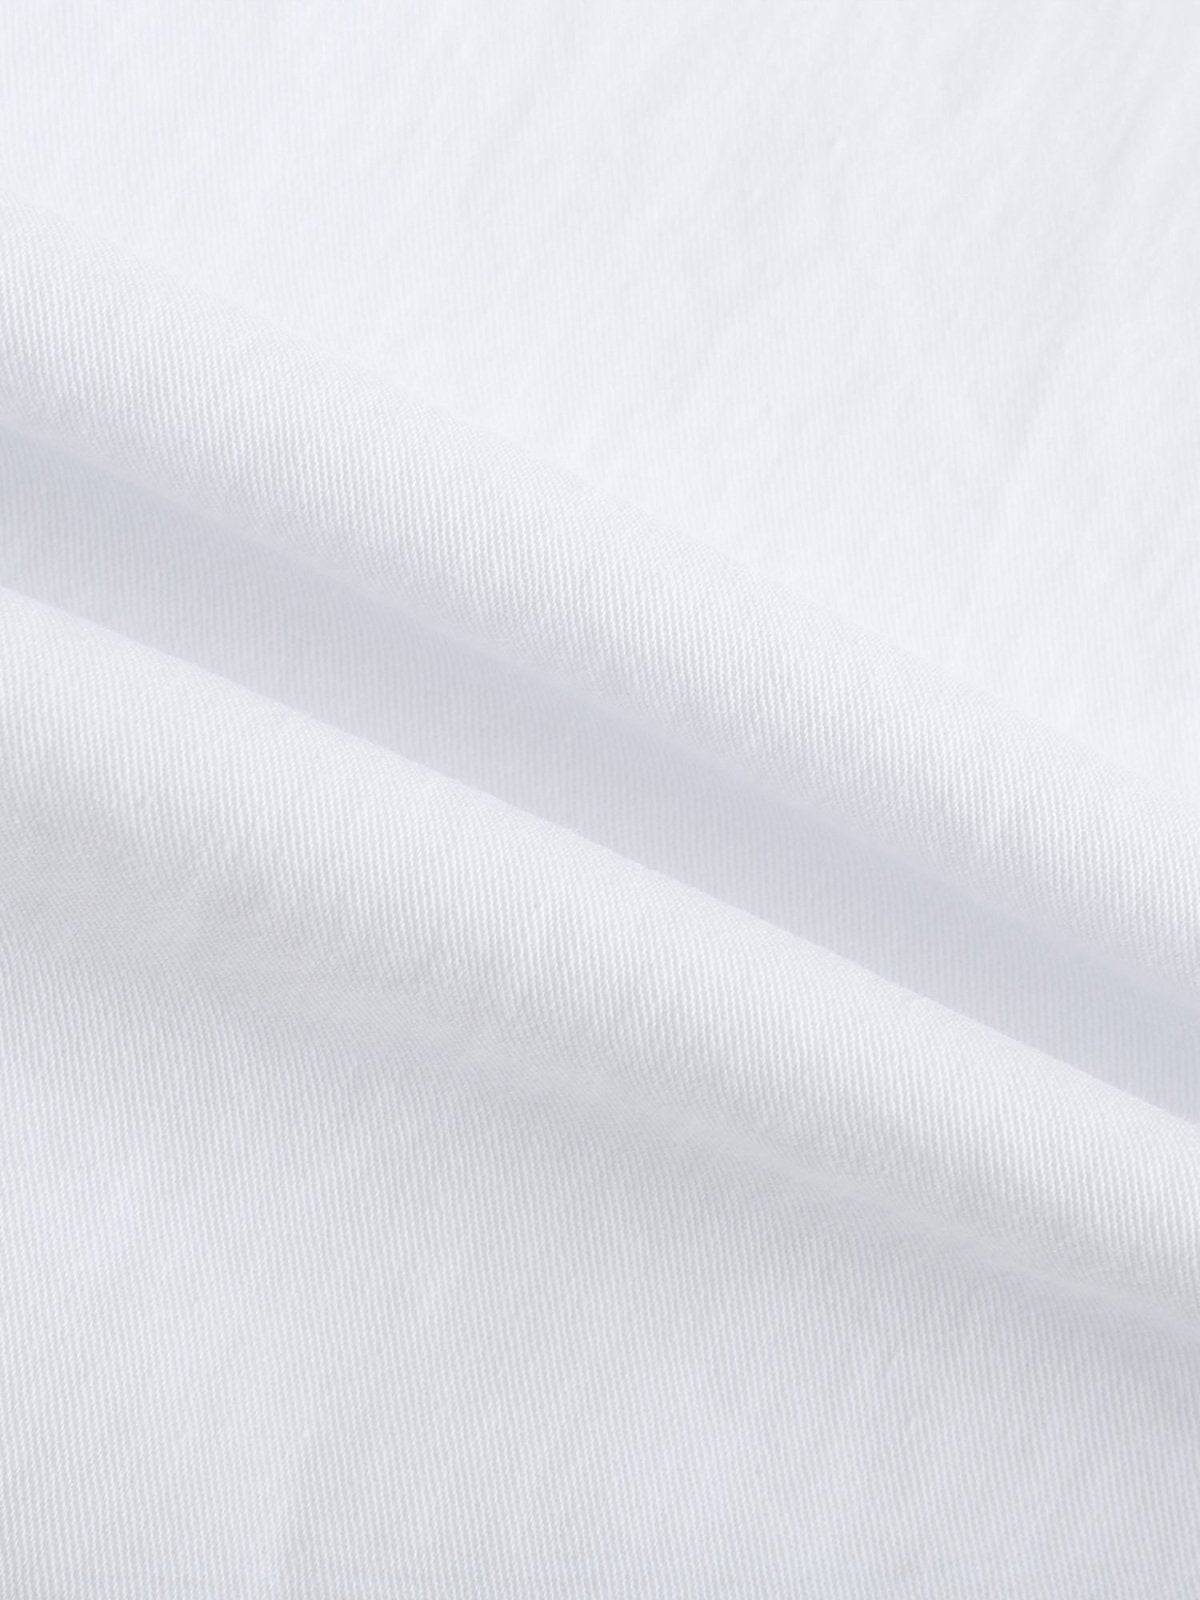 Danae Cut Out Shirt Dress - DAG-DD9619-22MochiIvoryF - Marshmallow White - F - D'ZAGE Designs